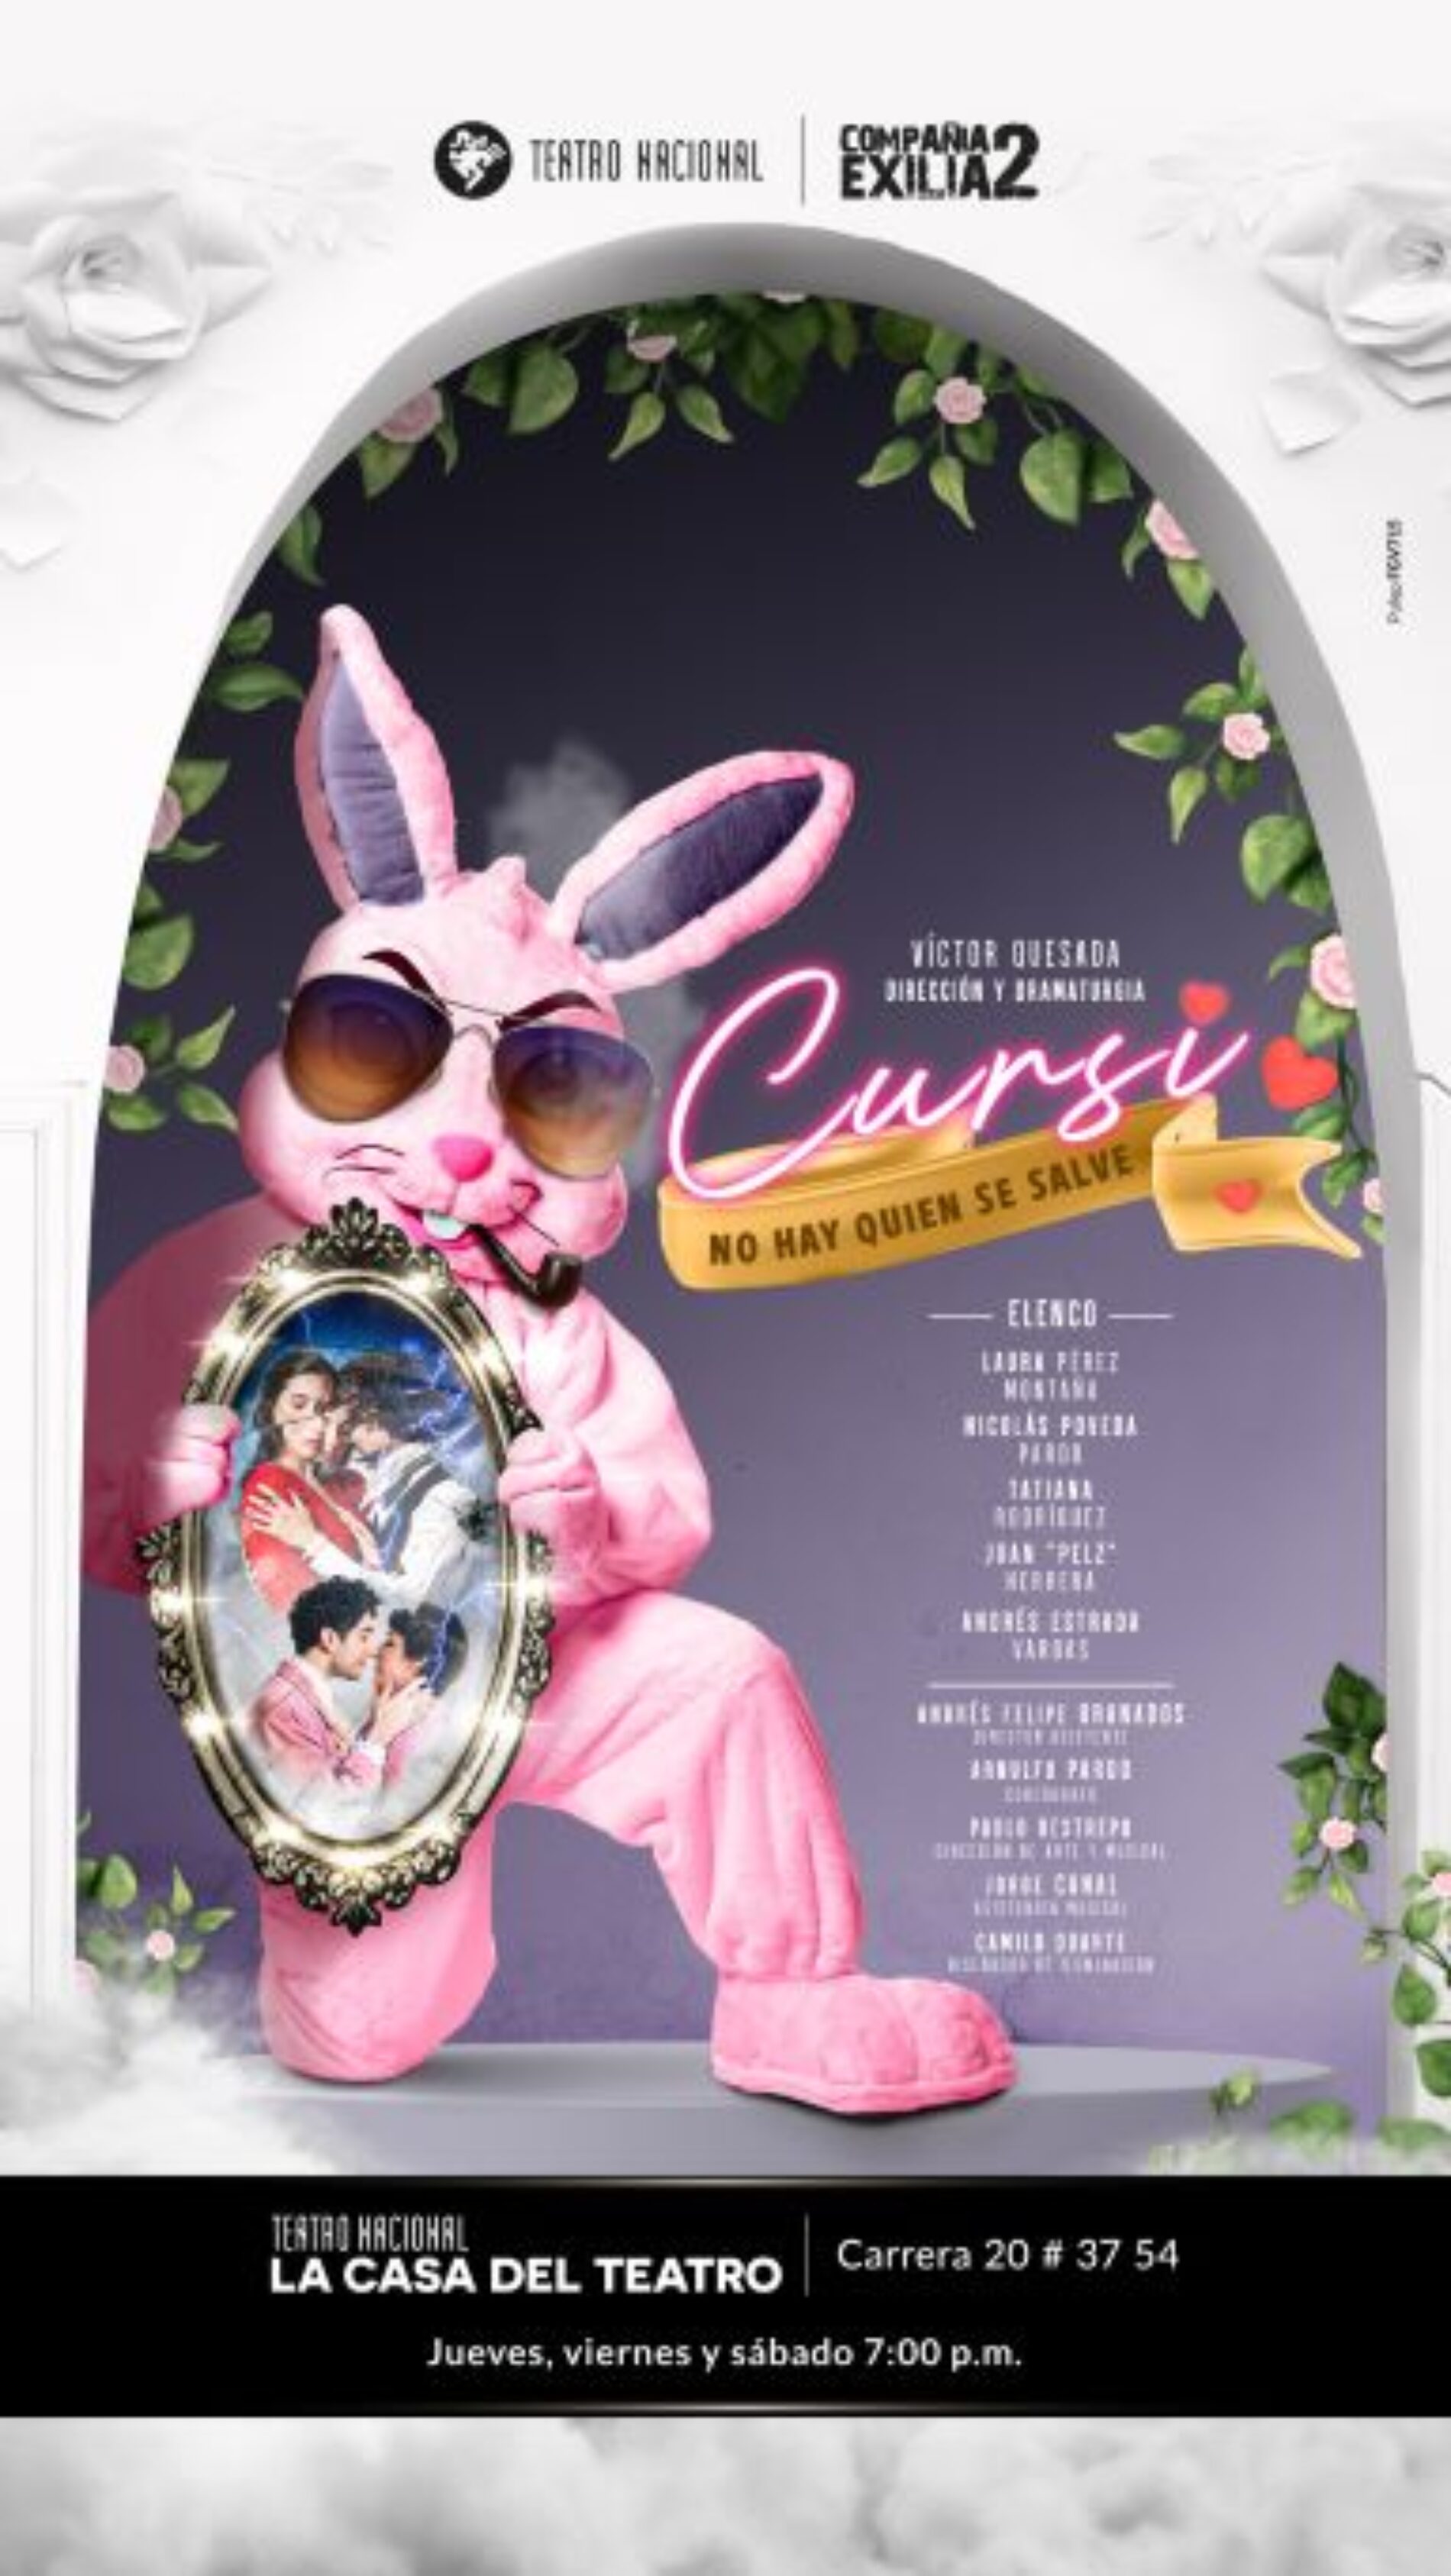 La Casa del Teatro Nacional estrena “Cursi”, no hay quien se salve, una comedia cursi-dramática